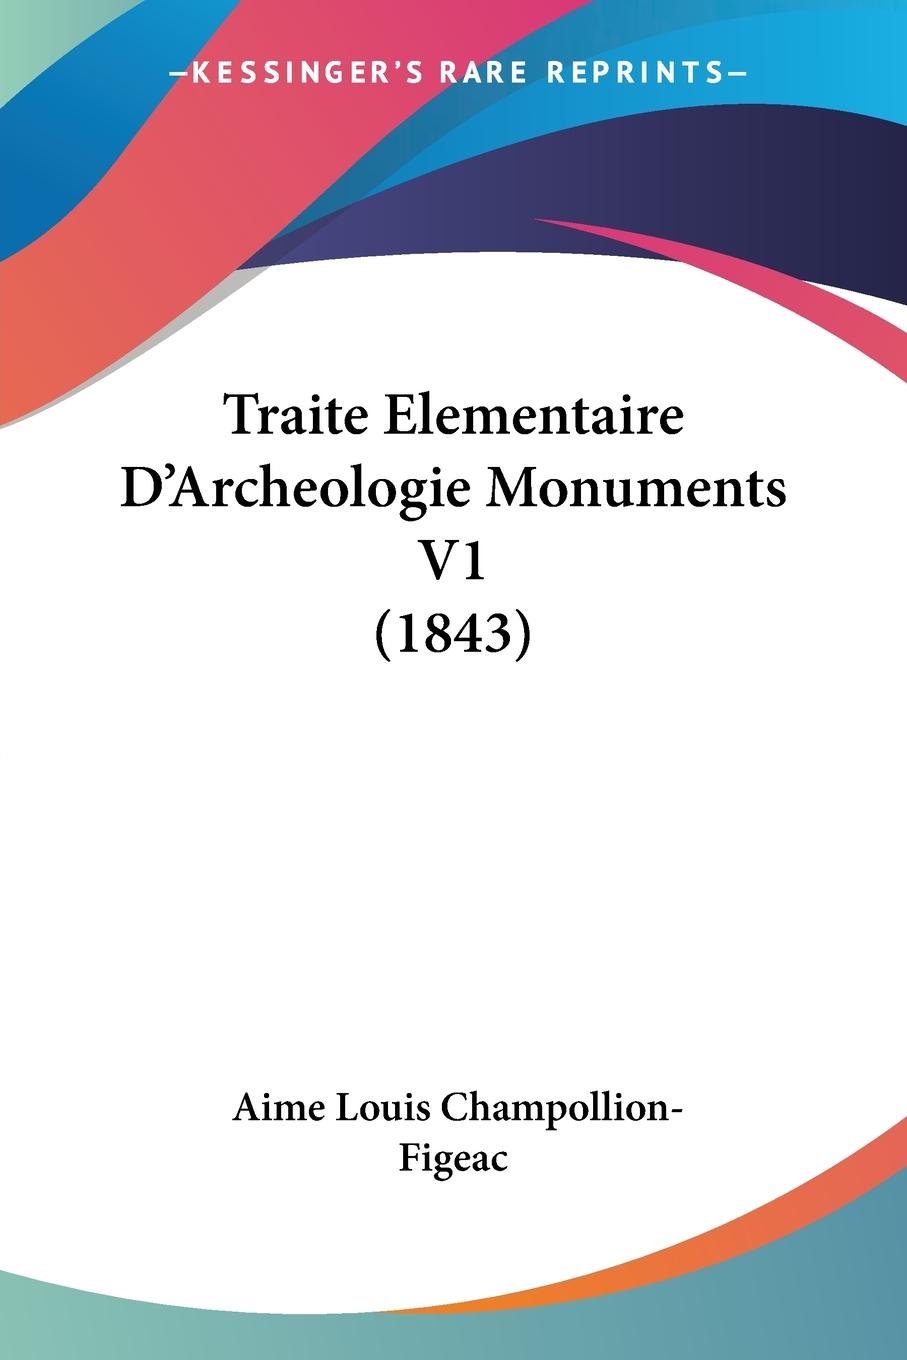 Traite Elementaire D Archeologie Monuments V1 (1843) - Champollion-Figeac, Aime Louis